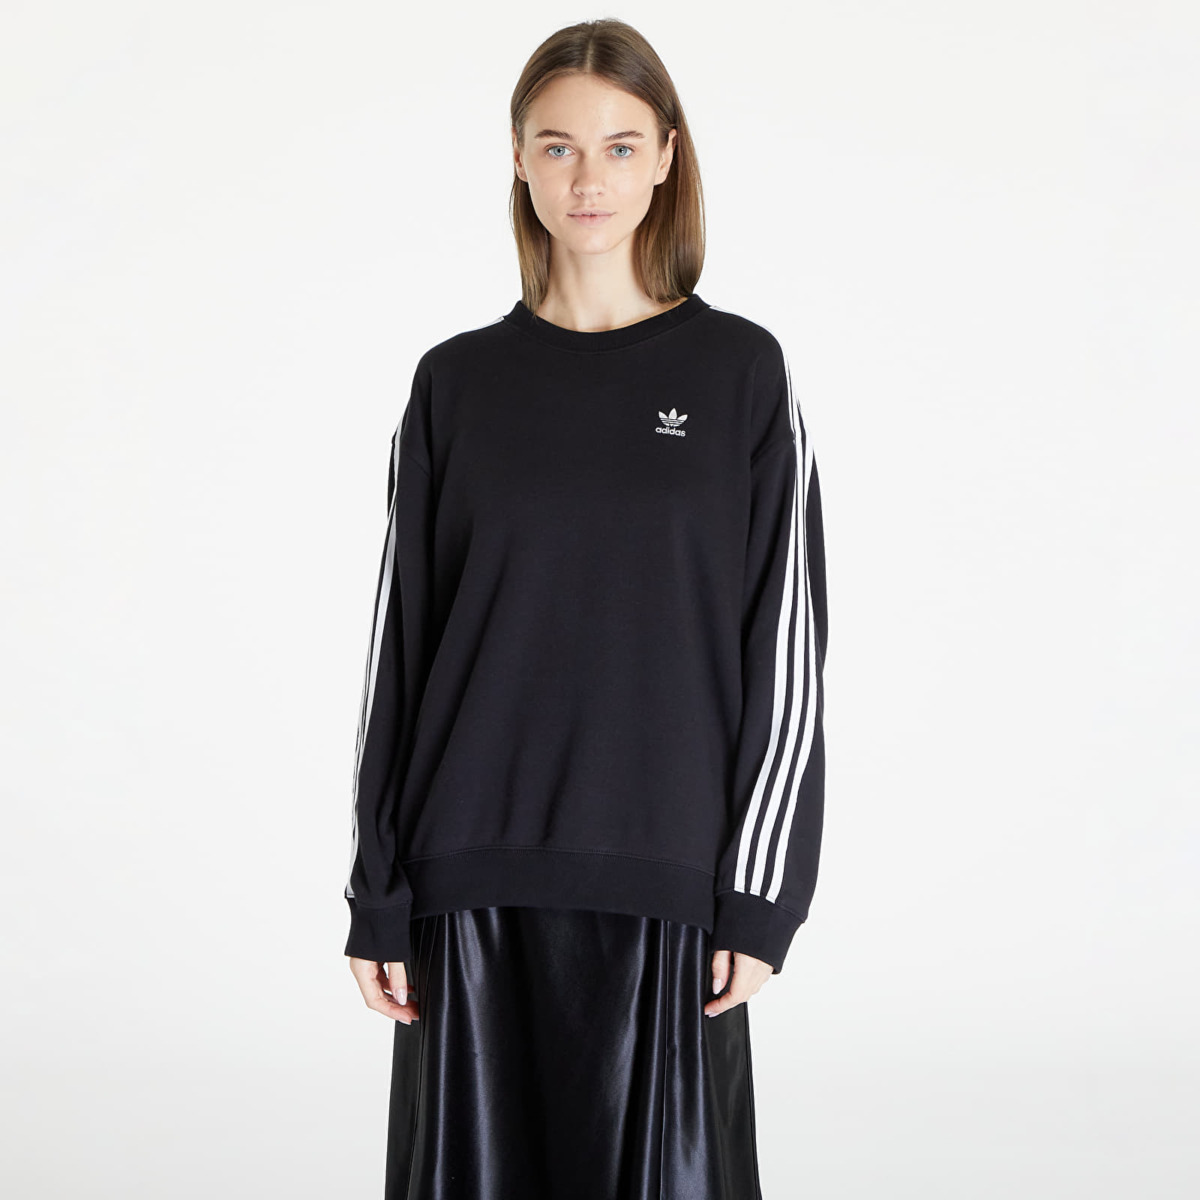 Adidas - Womens Sweatshirt in Black - Footshop GOOFASH